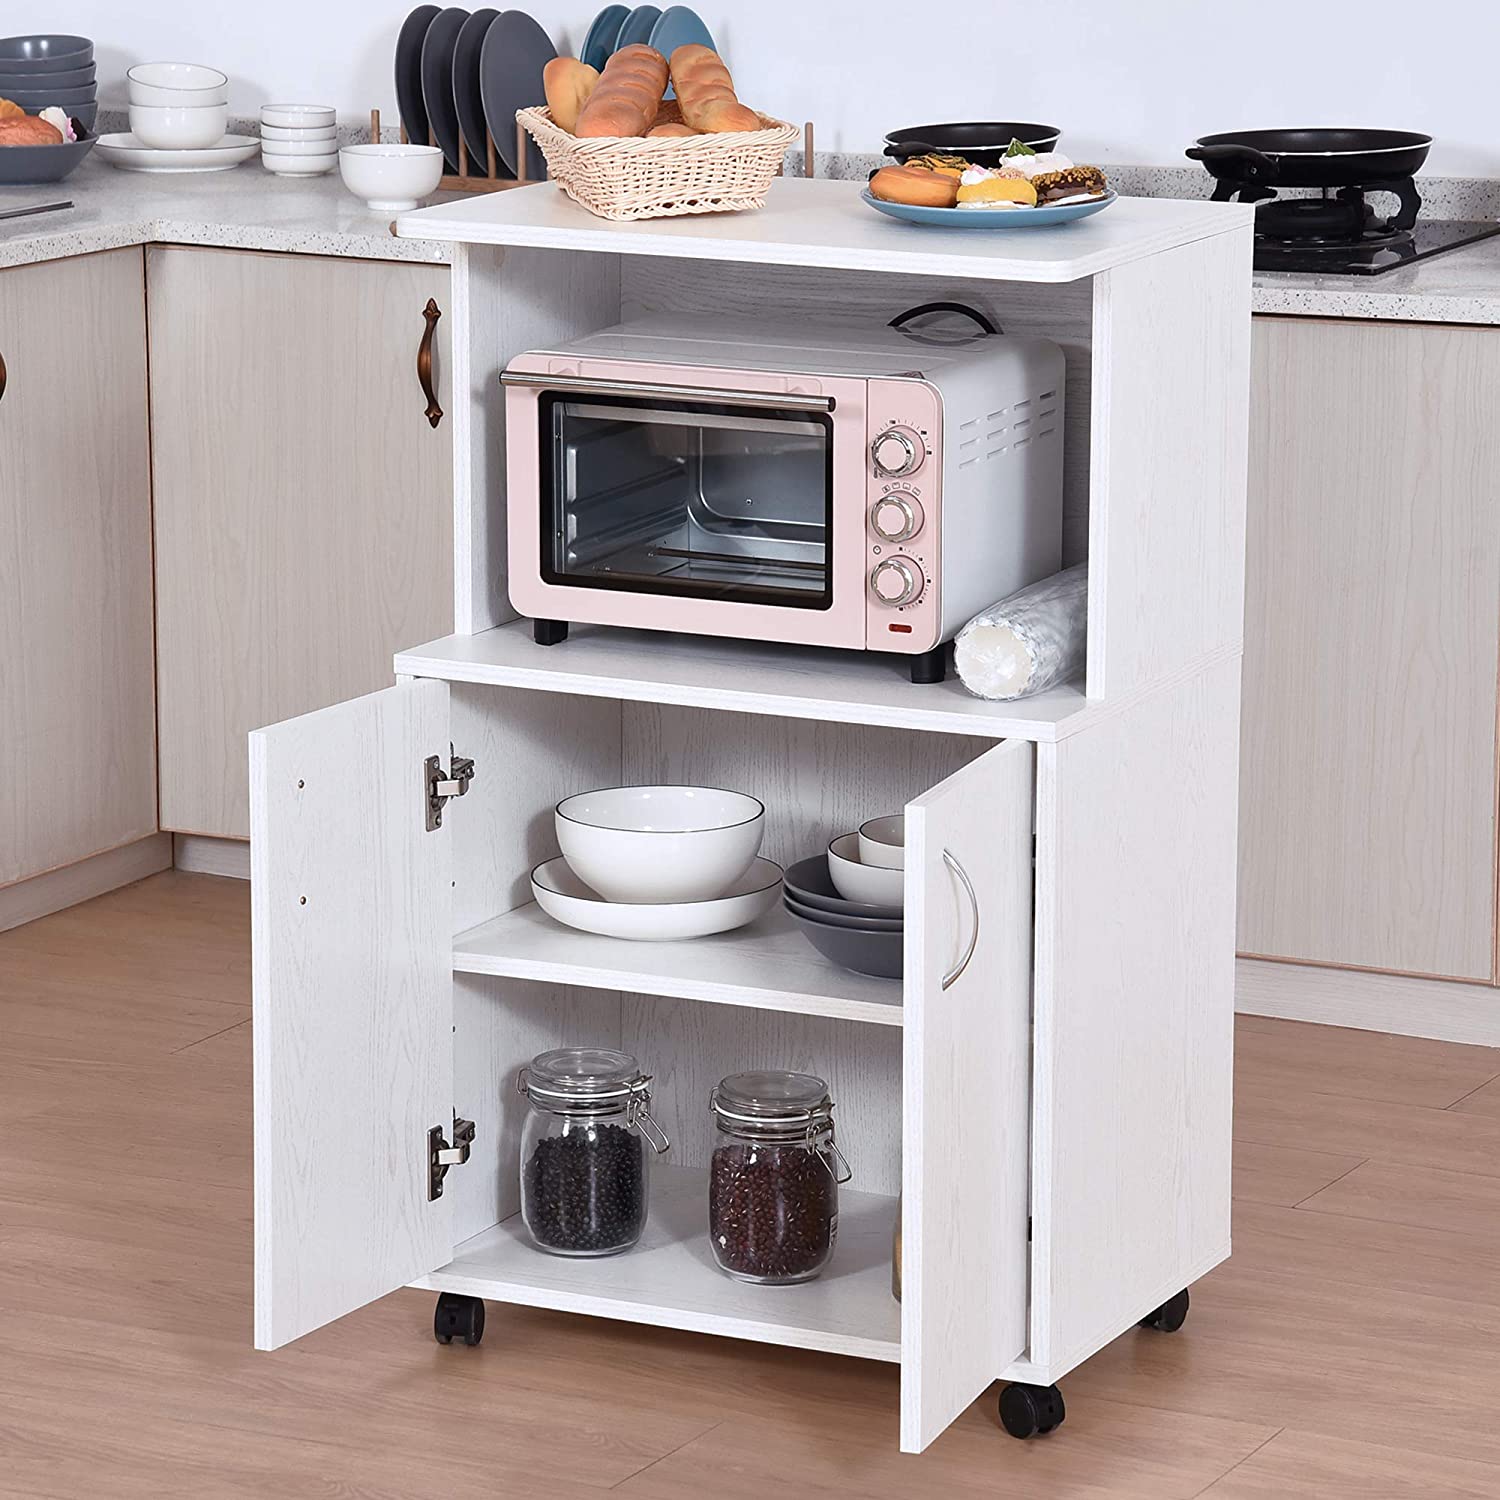 Cassetto cucina - Mobili da cucina